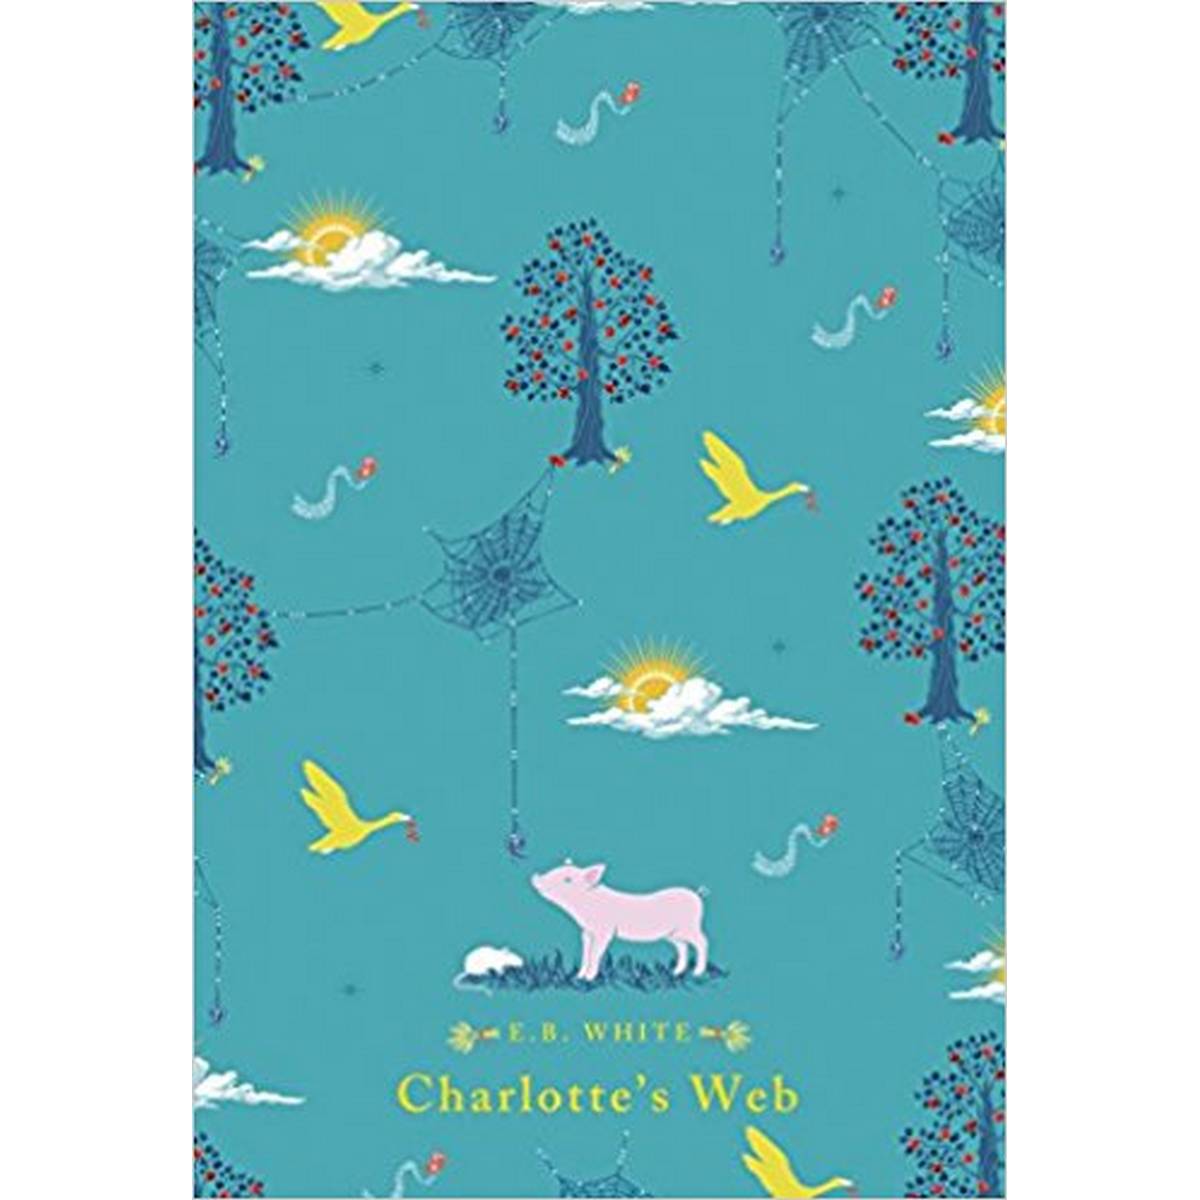 Charlotte's Web (Puffin Classics)